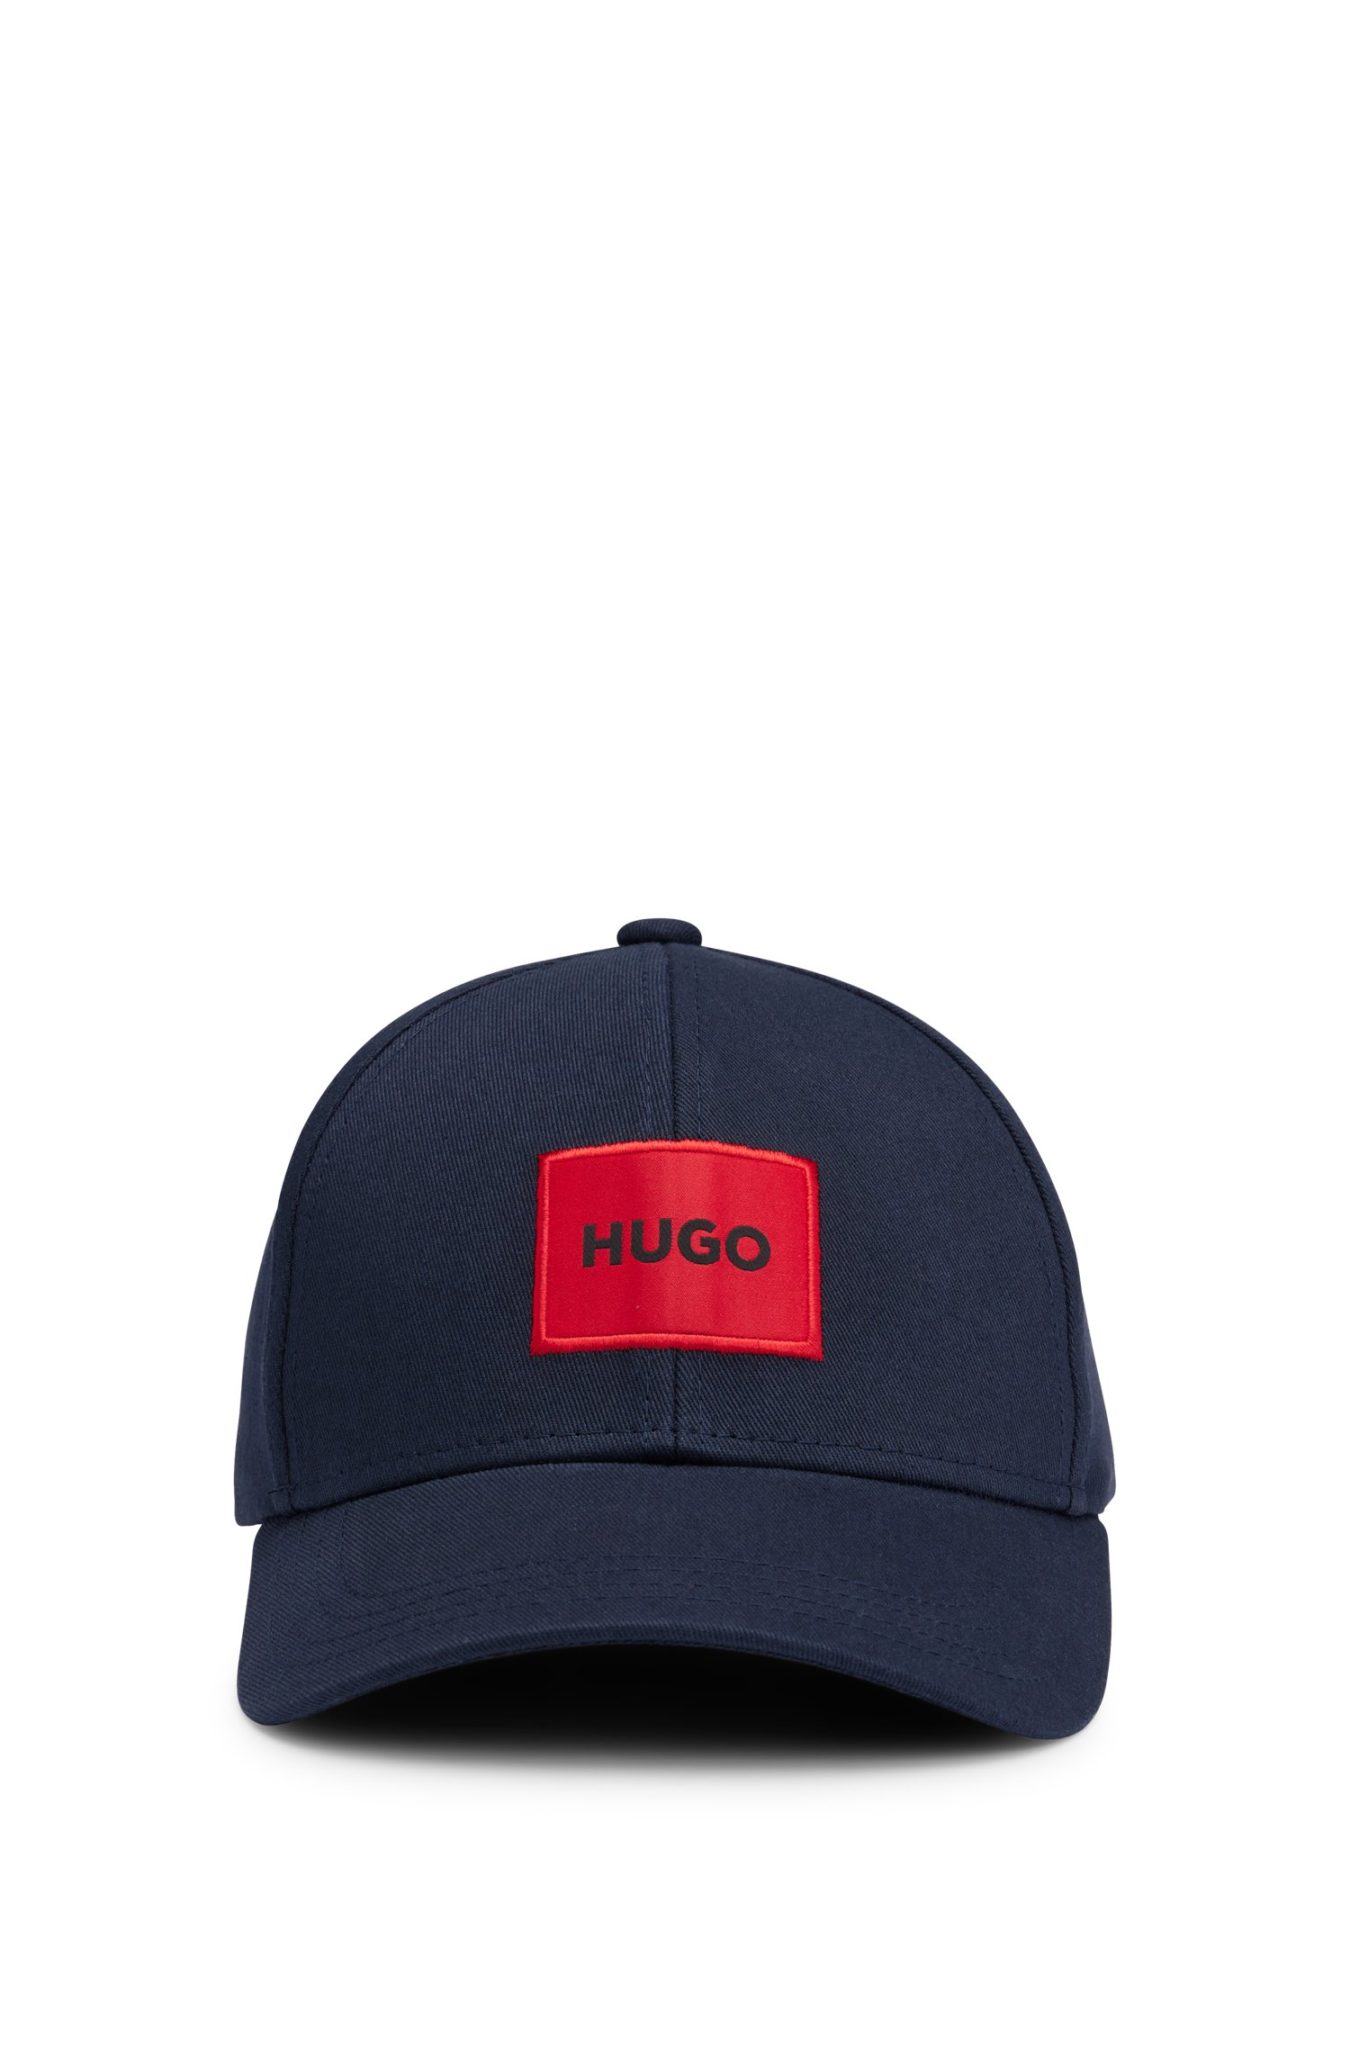 Hugo Boss Casquette en twill de coton avec étiquette logo rouge